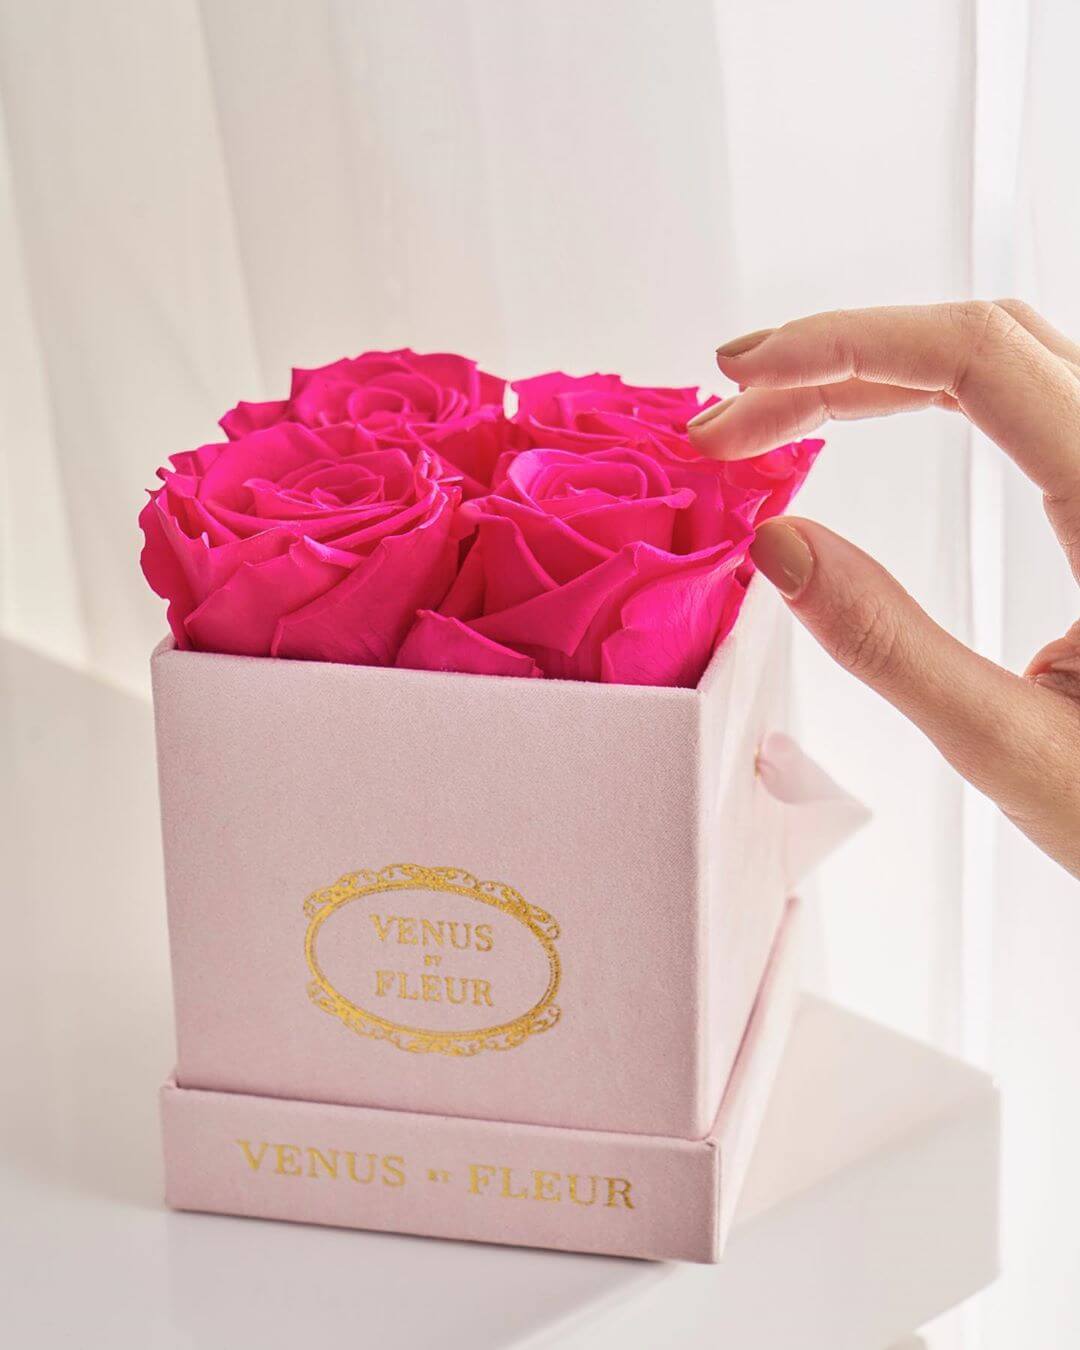 ¡Los arreglos de Venus ET Fleur son ideales para cualquier ocasión!